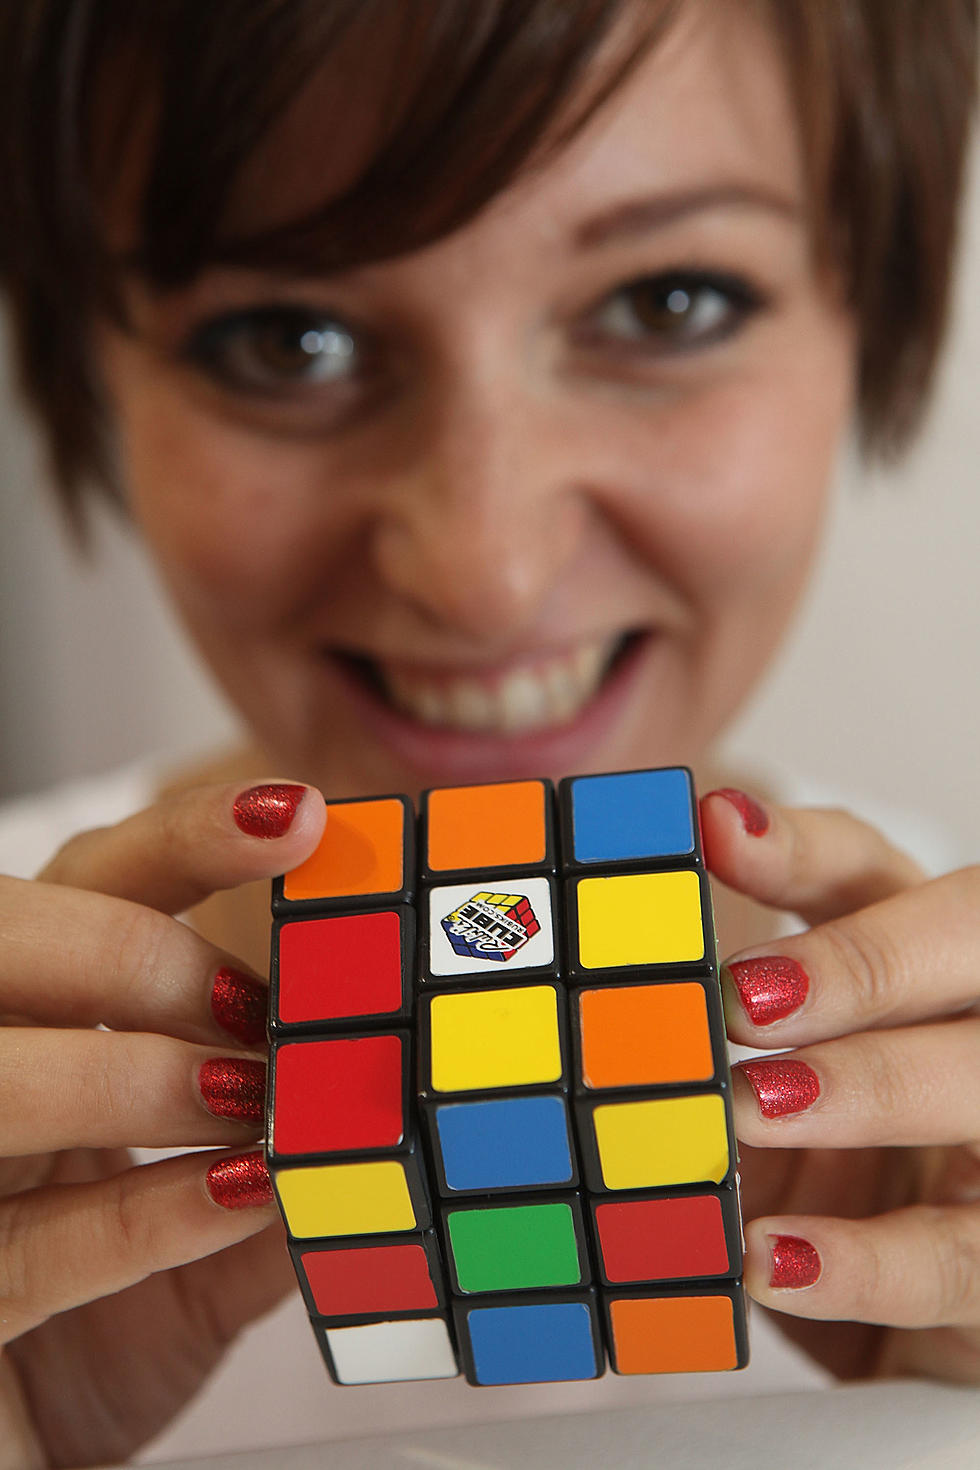 Baby Boomer Alert:  Happy Birthday to the Rubik’s Cube!